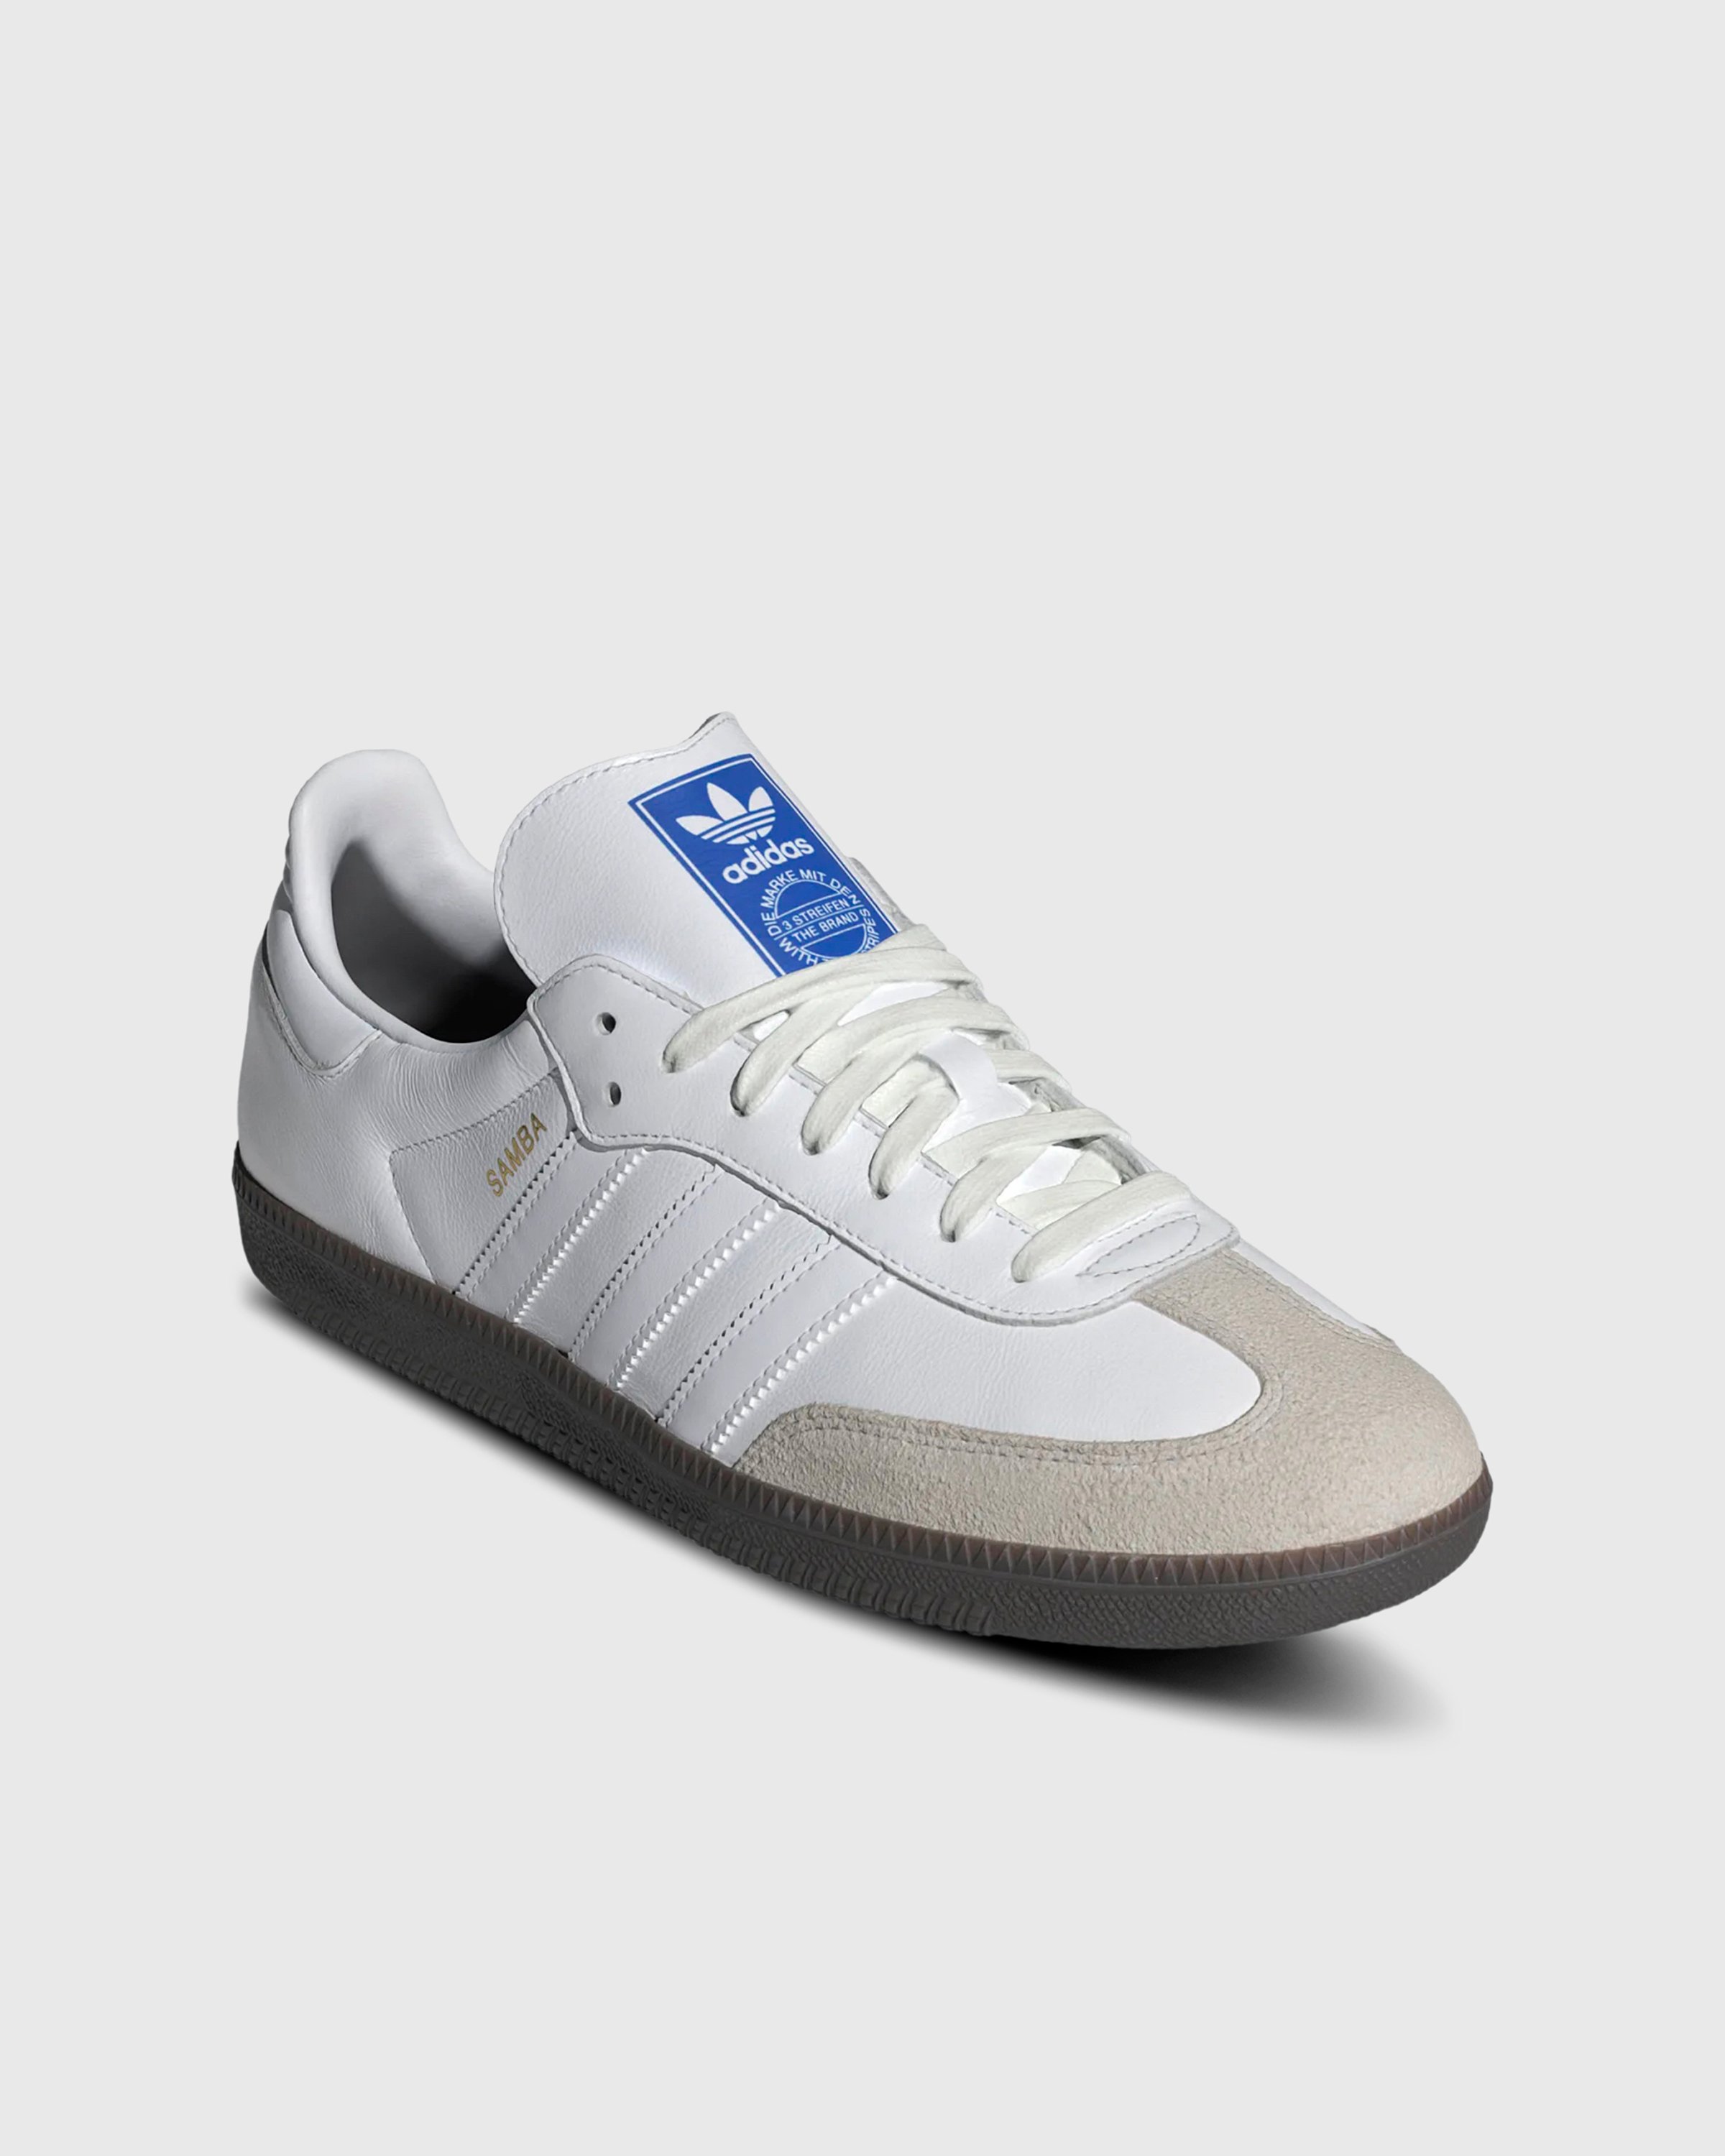 Adidas - SAMBA OG            FTWWHT/FTWWHT/GUM5 - Footwear - White - Image 3